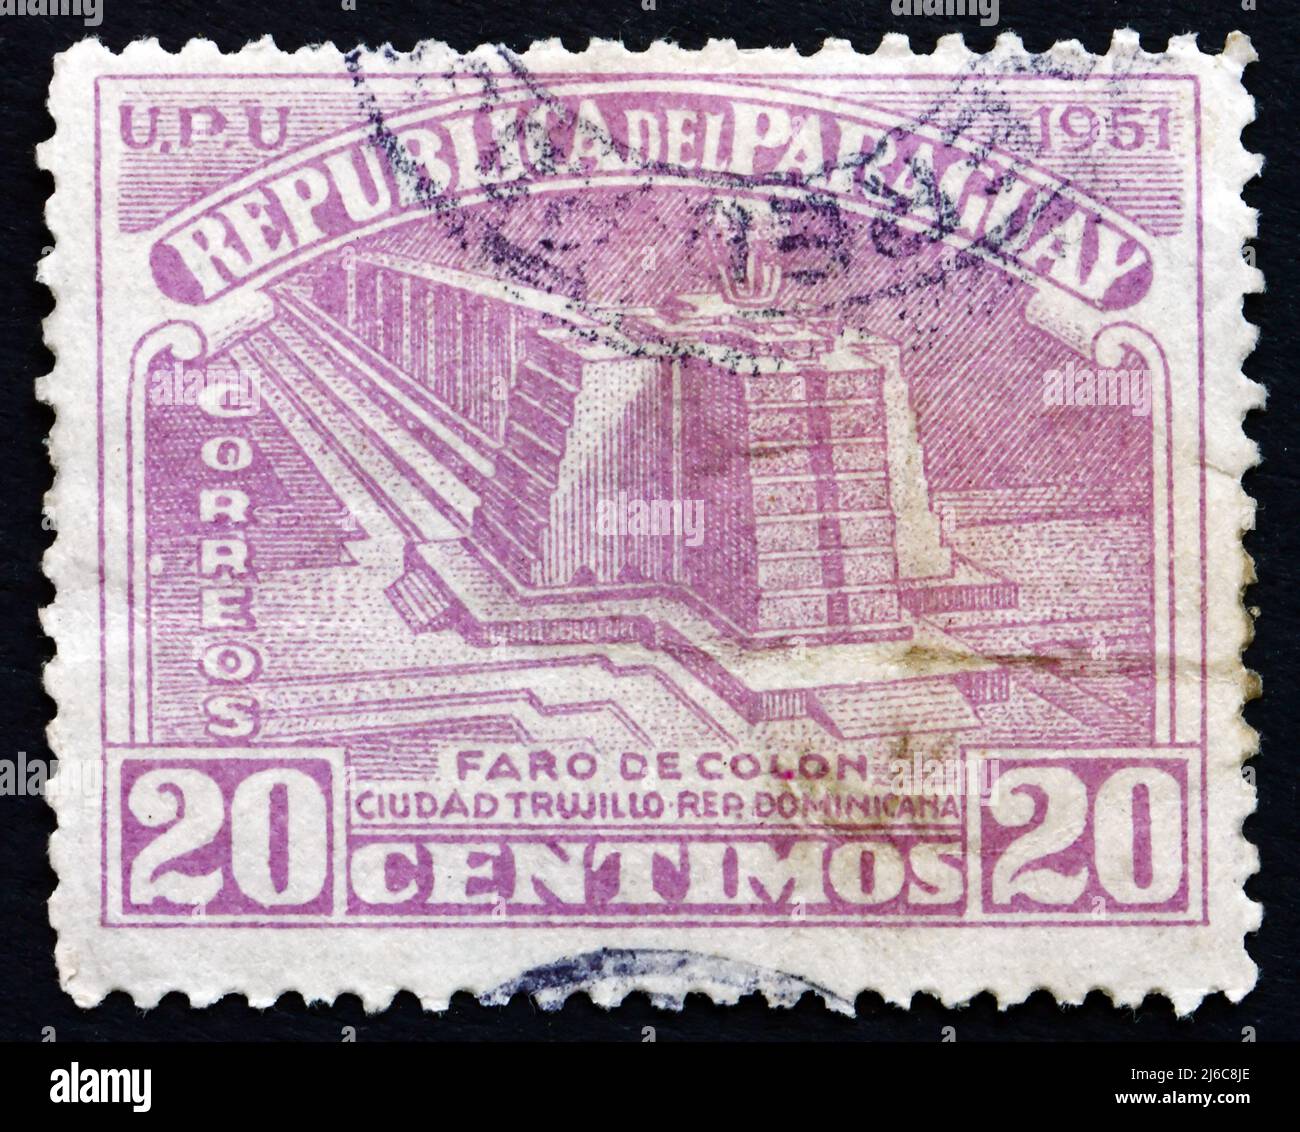 PARAGUAY - CIRCA 1952: Un francobollo stampato in Paraguay mostra Columbus Lighthouse, un Monumento situato a Santo Domingo Este, Repubblica Dominicana, circa 1952 Foto Stock